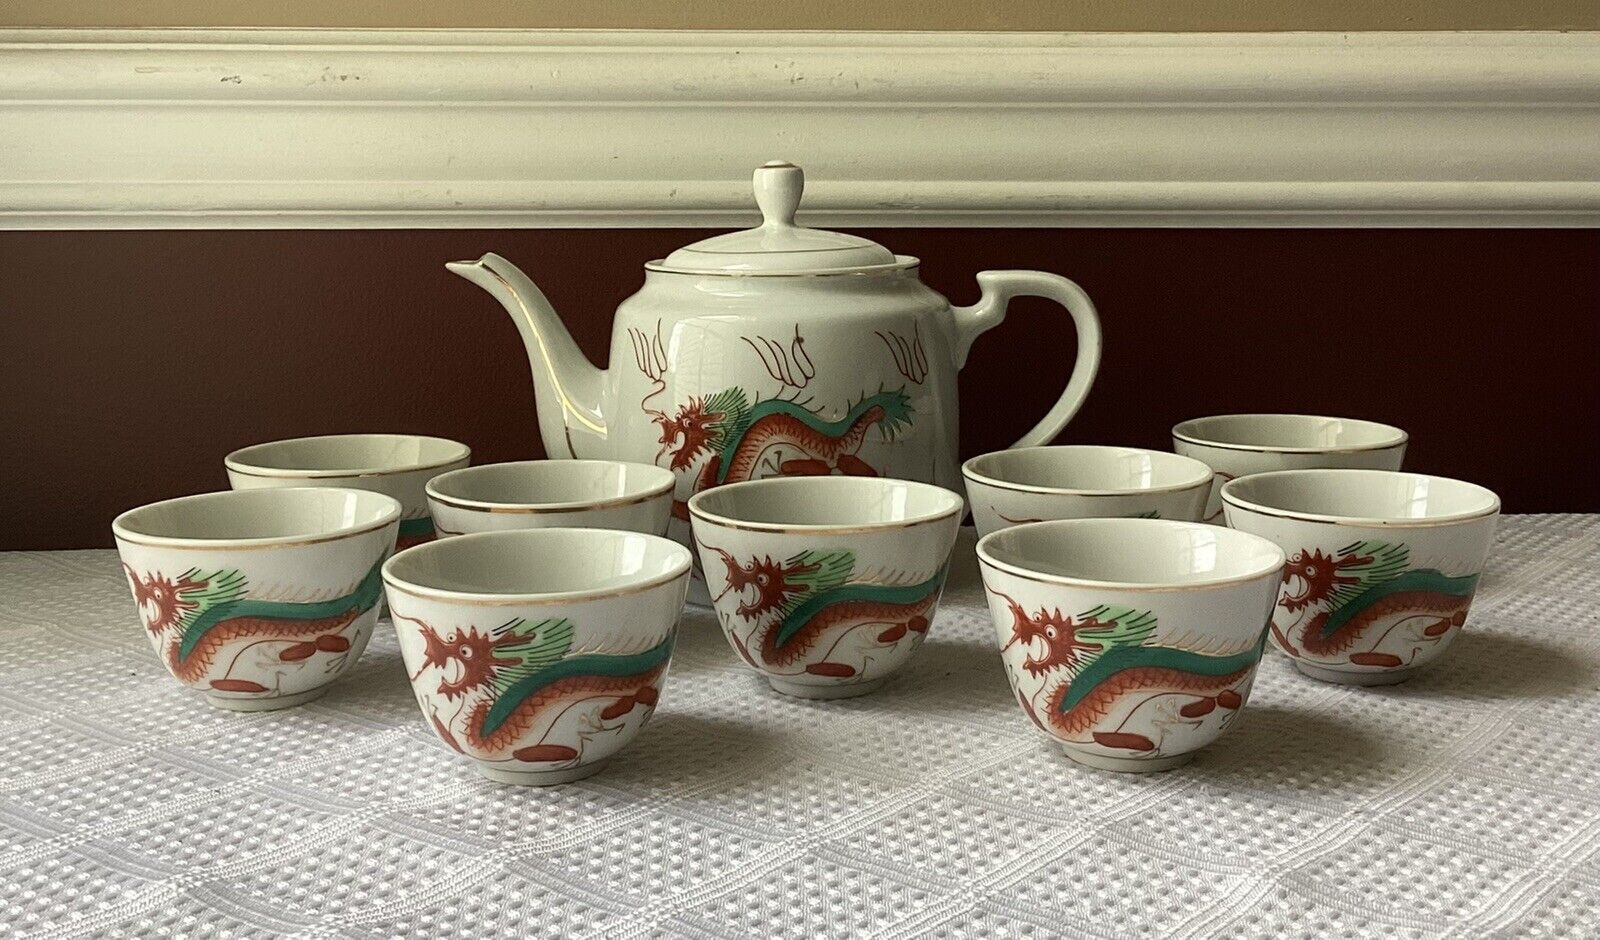 Vintage/ Antique 11-piece Chinese Porcelain Tea Set with Dragon Design